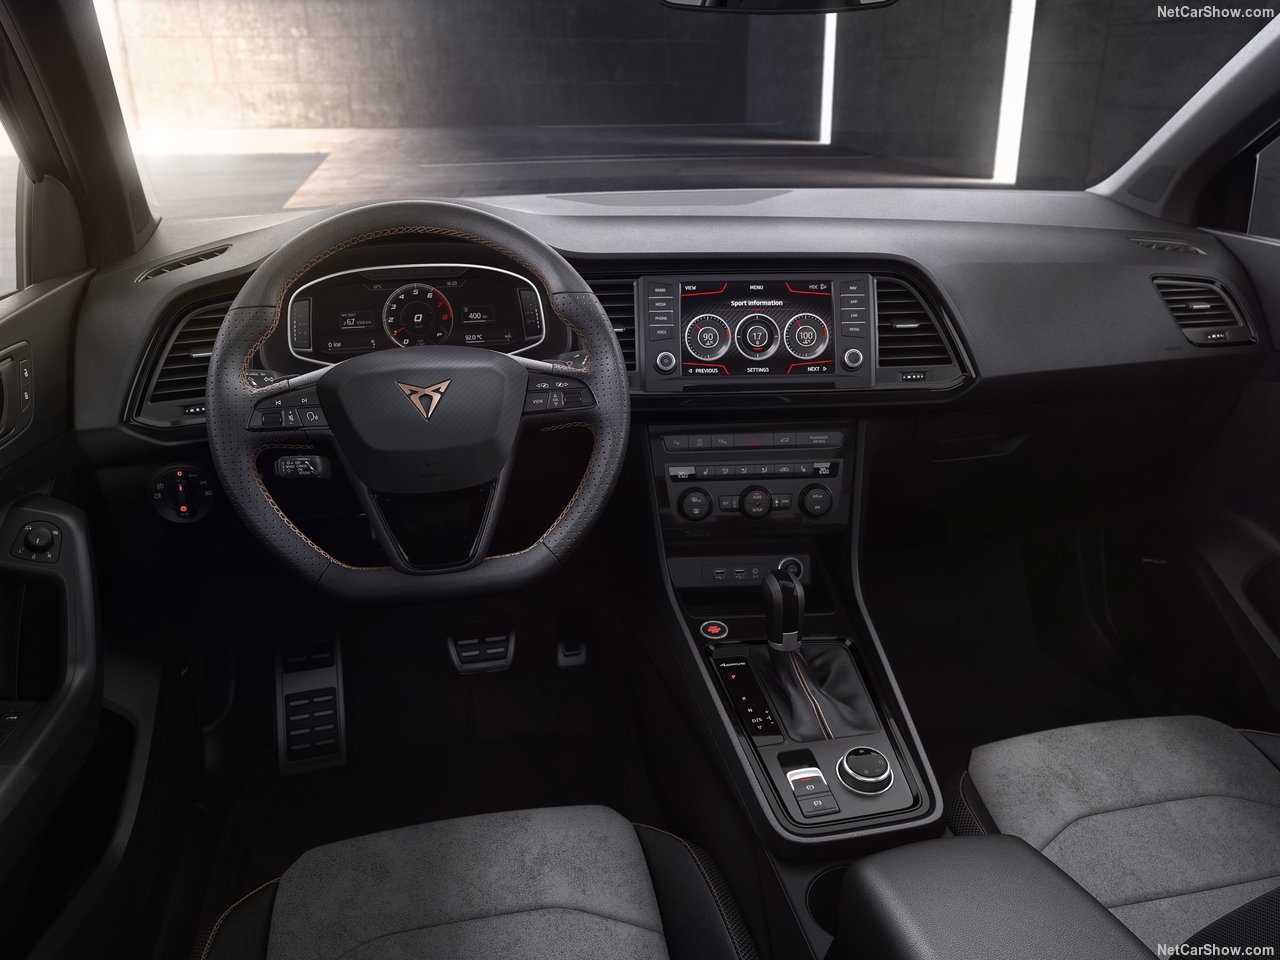 2019 Seat Cupra Ateca’nın özellikleri açıklandı! Seat Cupra Ateca’nın motor ve donanım özellikleri neler?